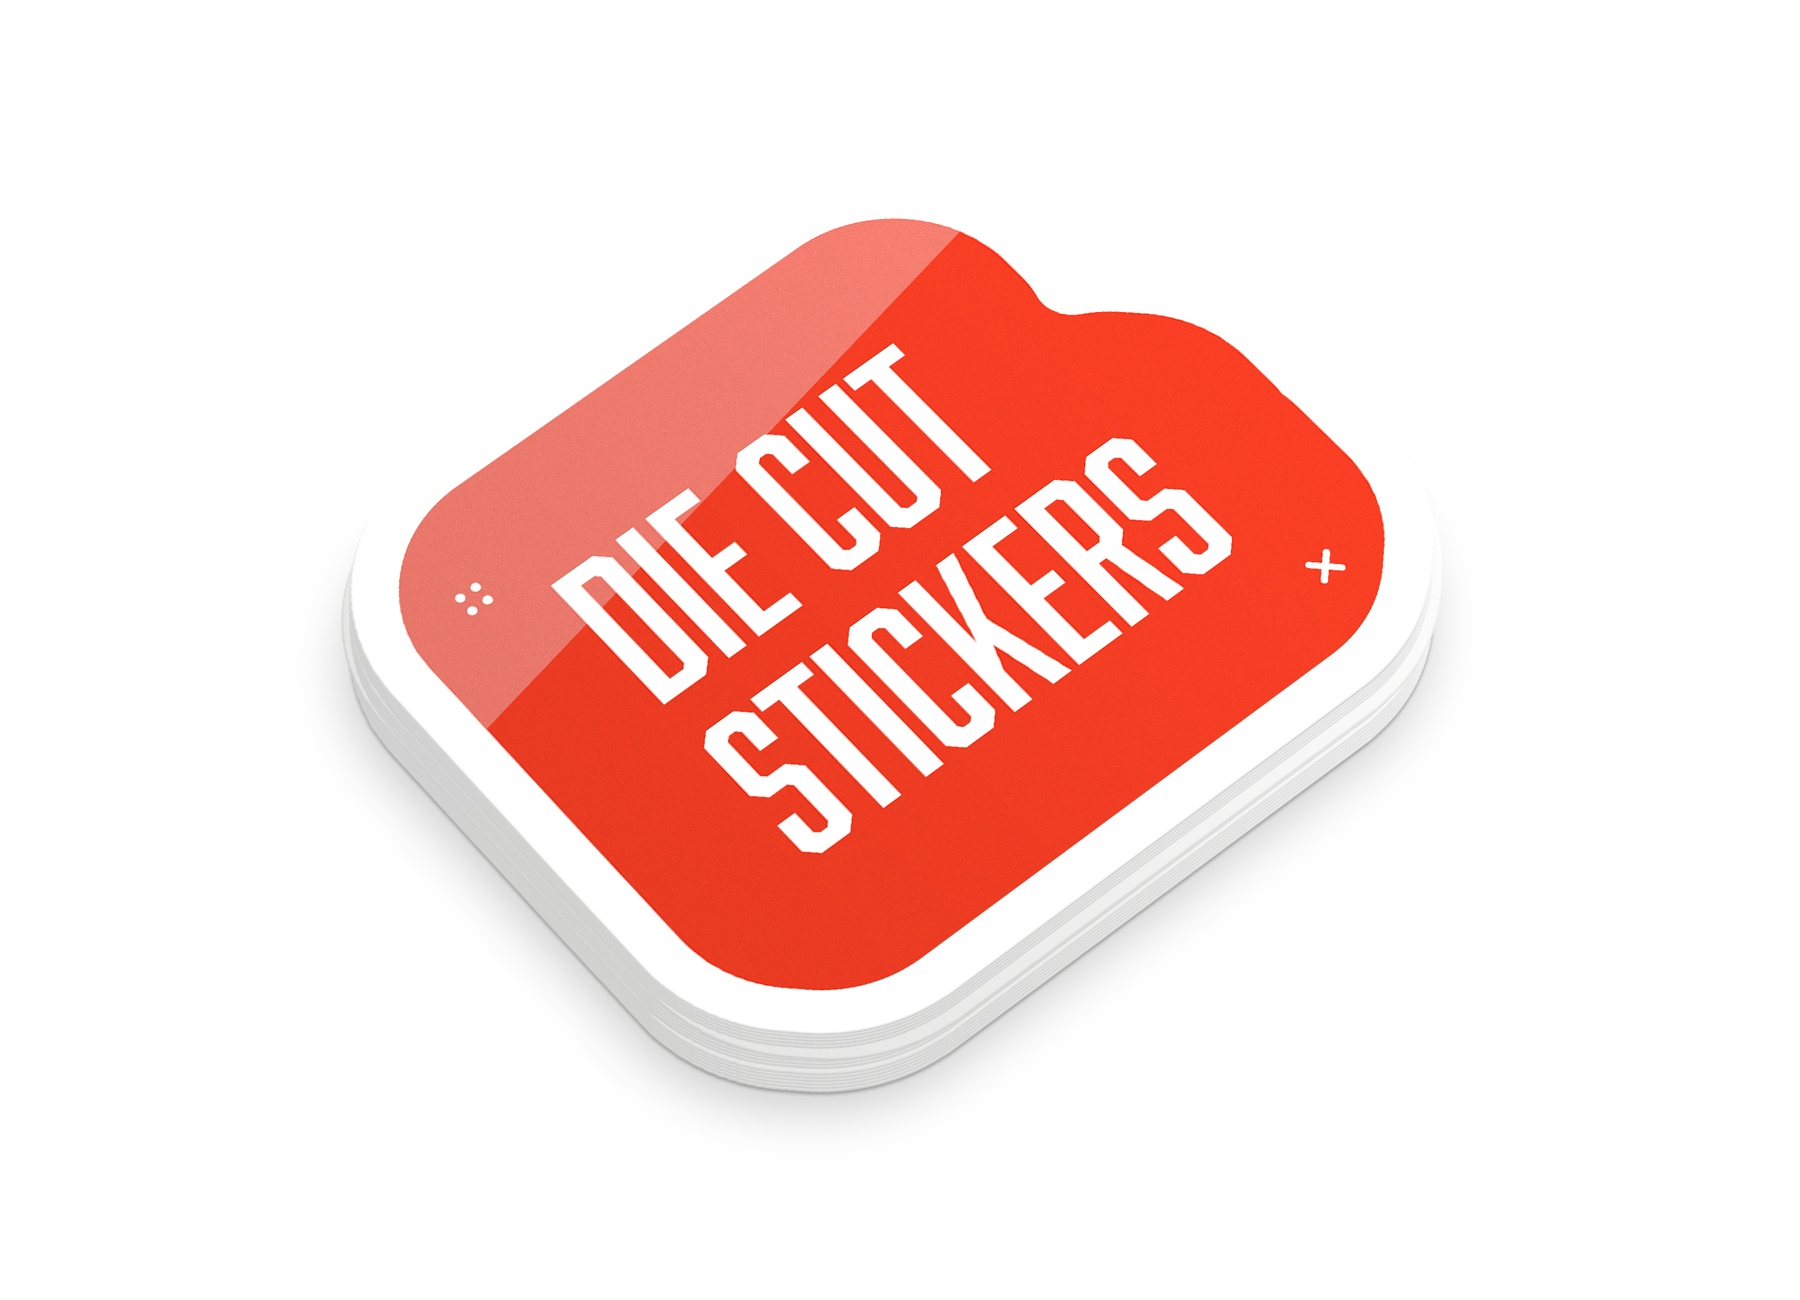 Los Angeles Die Cut Stickers printing – best price